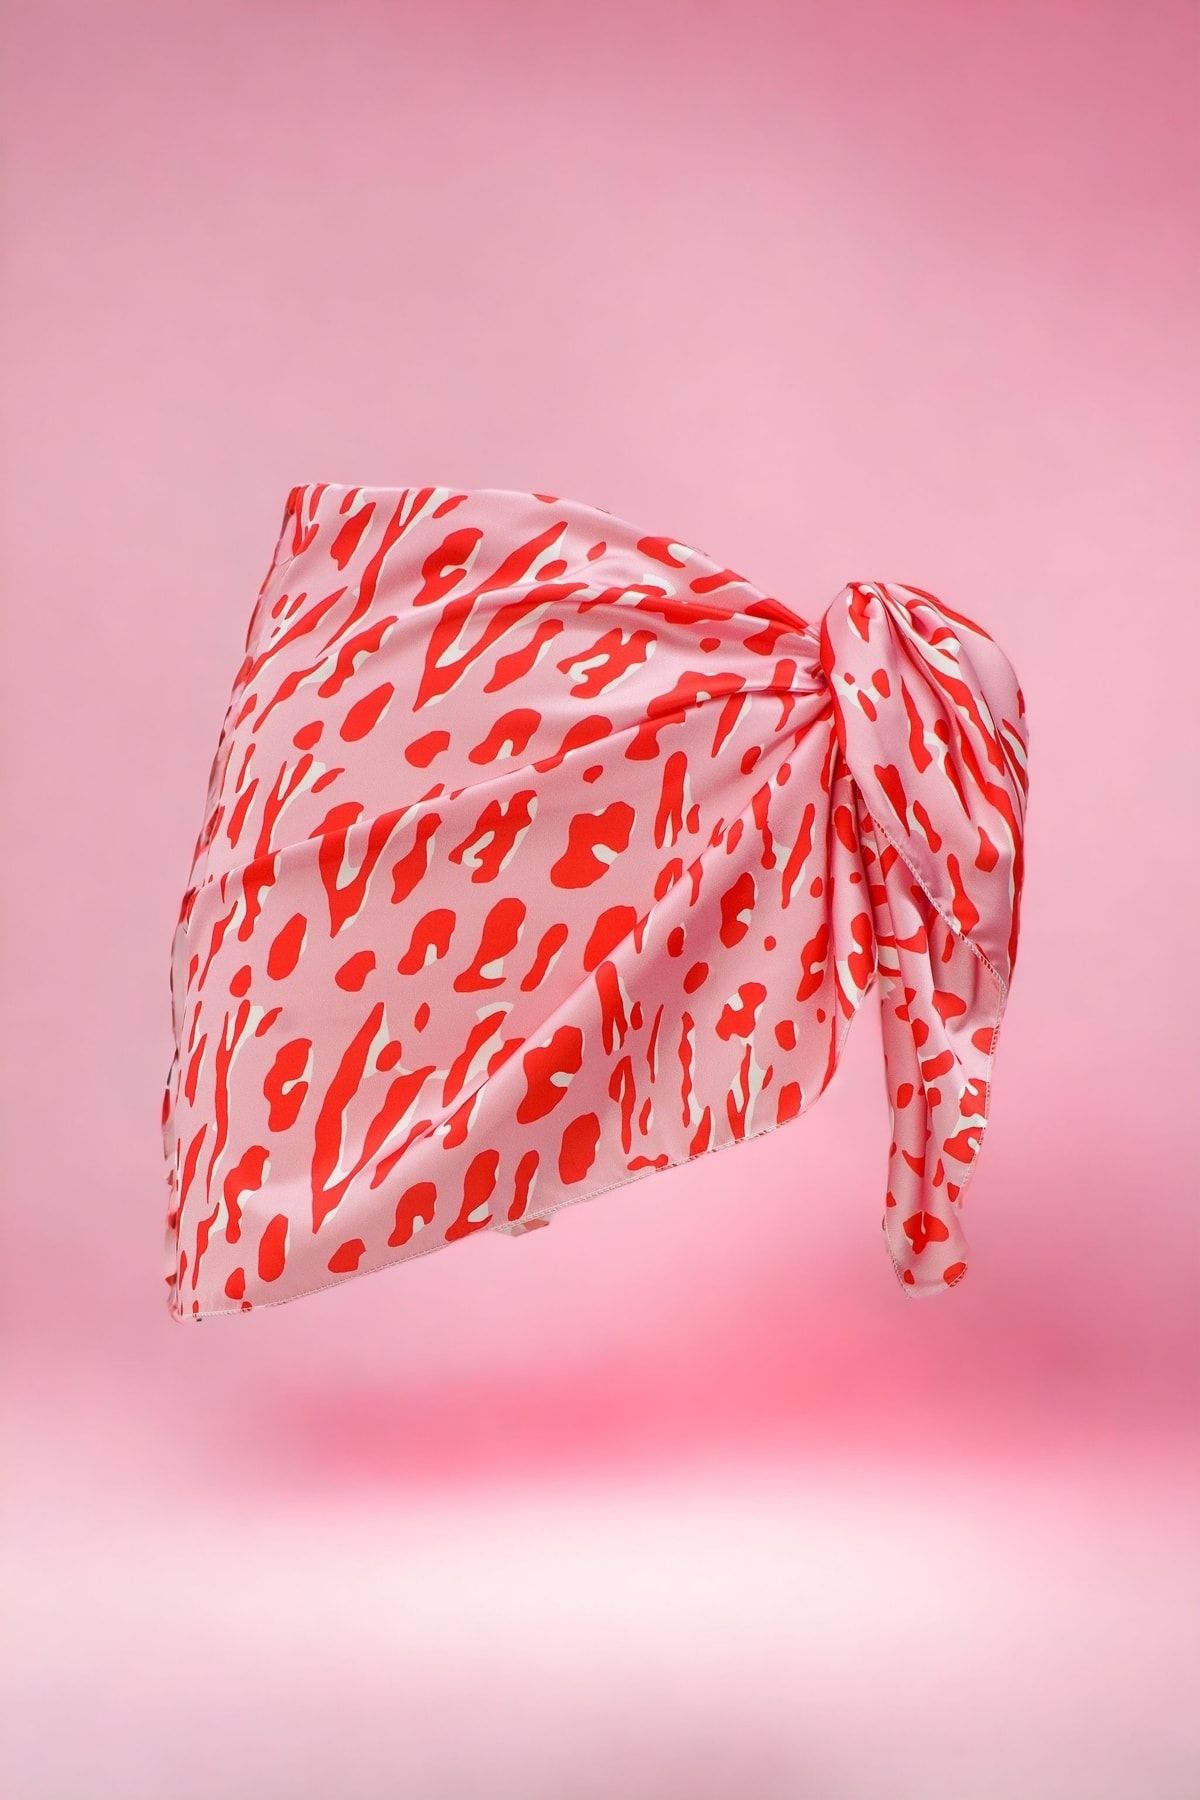 pistore Pembe Kırmızı Geometrik Desenli Kısa Pareo Saten Iç Göstermez Kadın Plaj Elbisesi Yeni Sezon